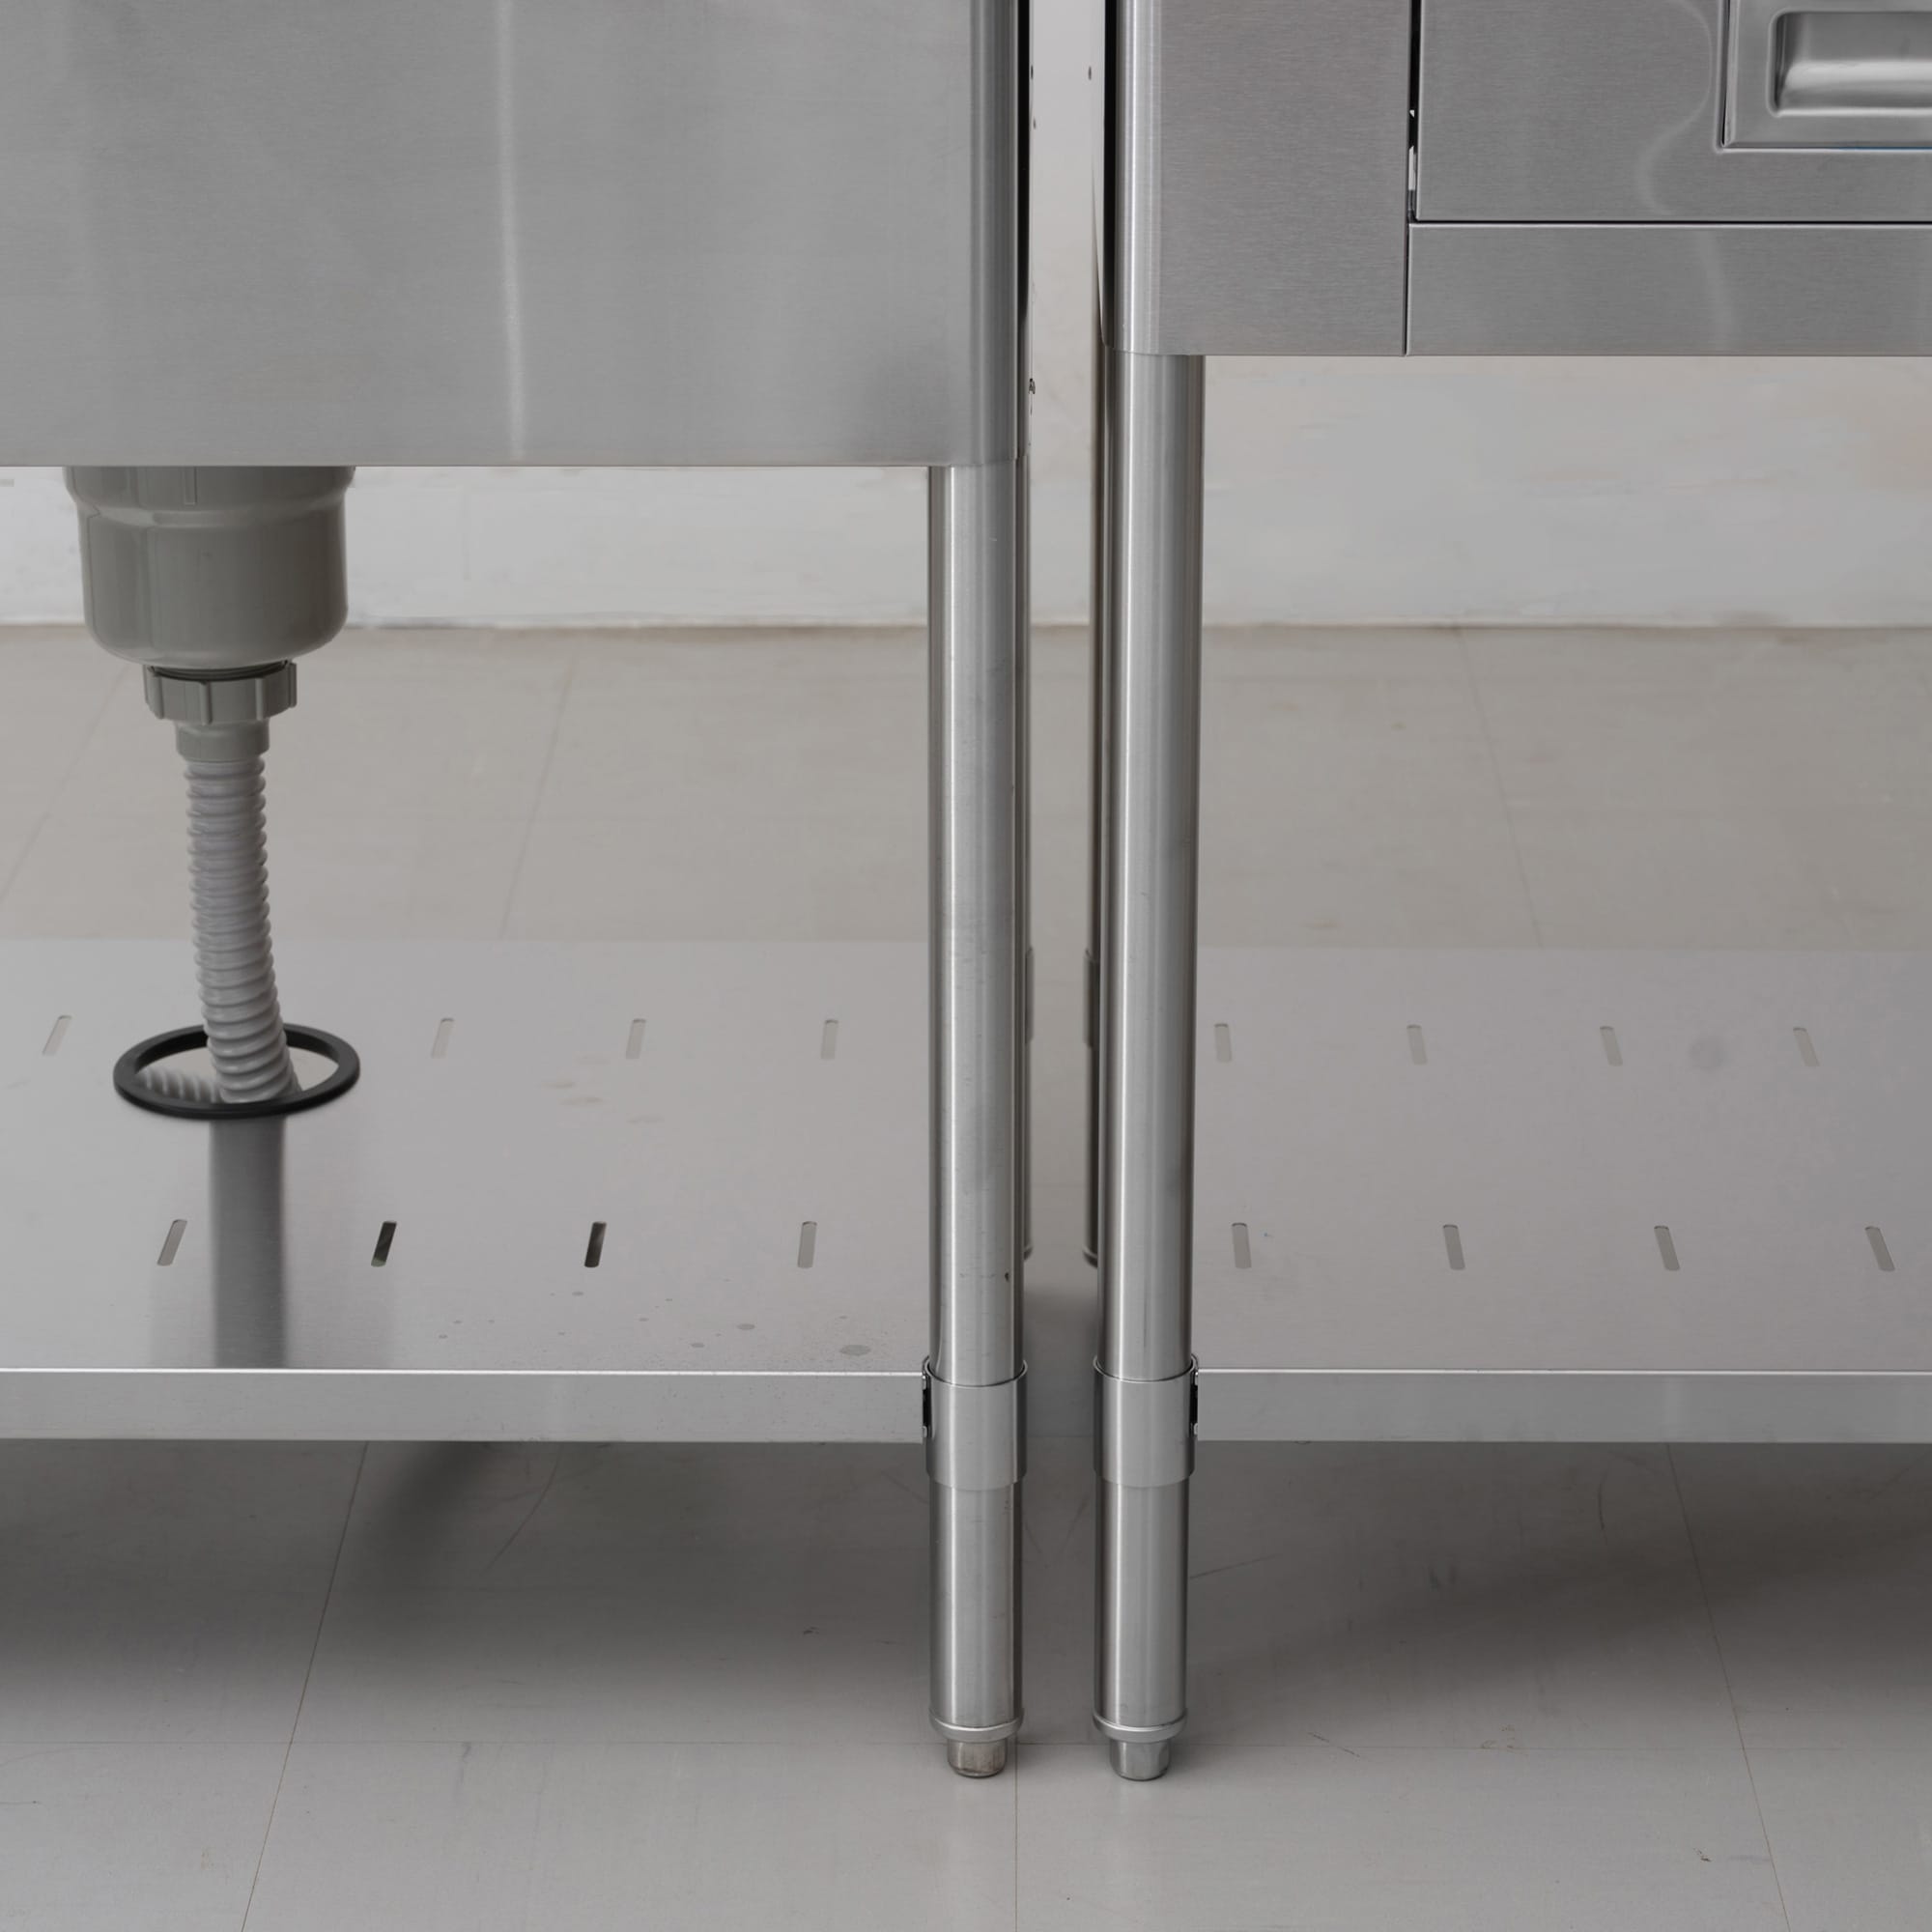 業務用キッチン 調理台 引き出し KB-KC025-06-G239 並べると脚と脚の間に隙間ができます